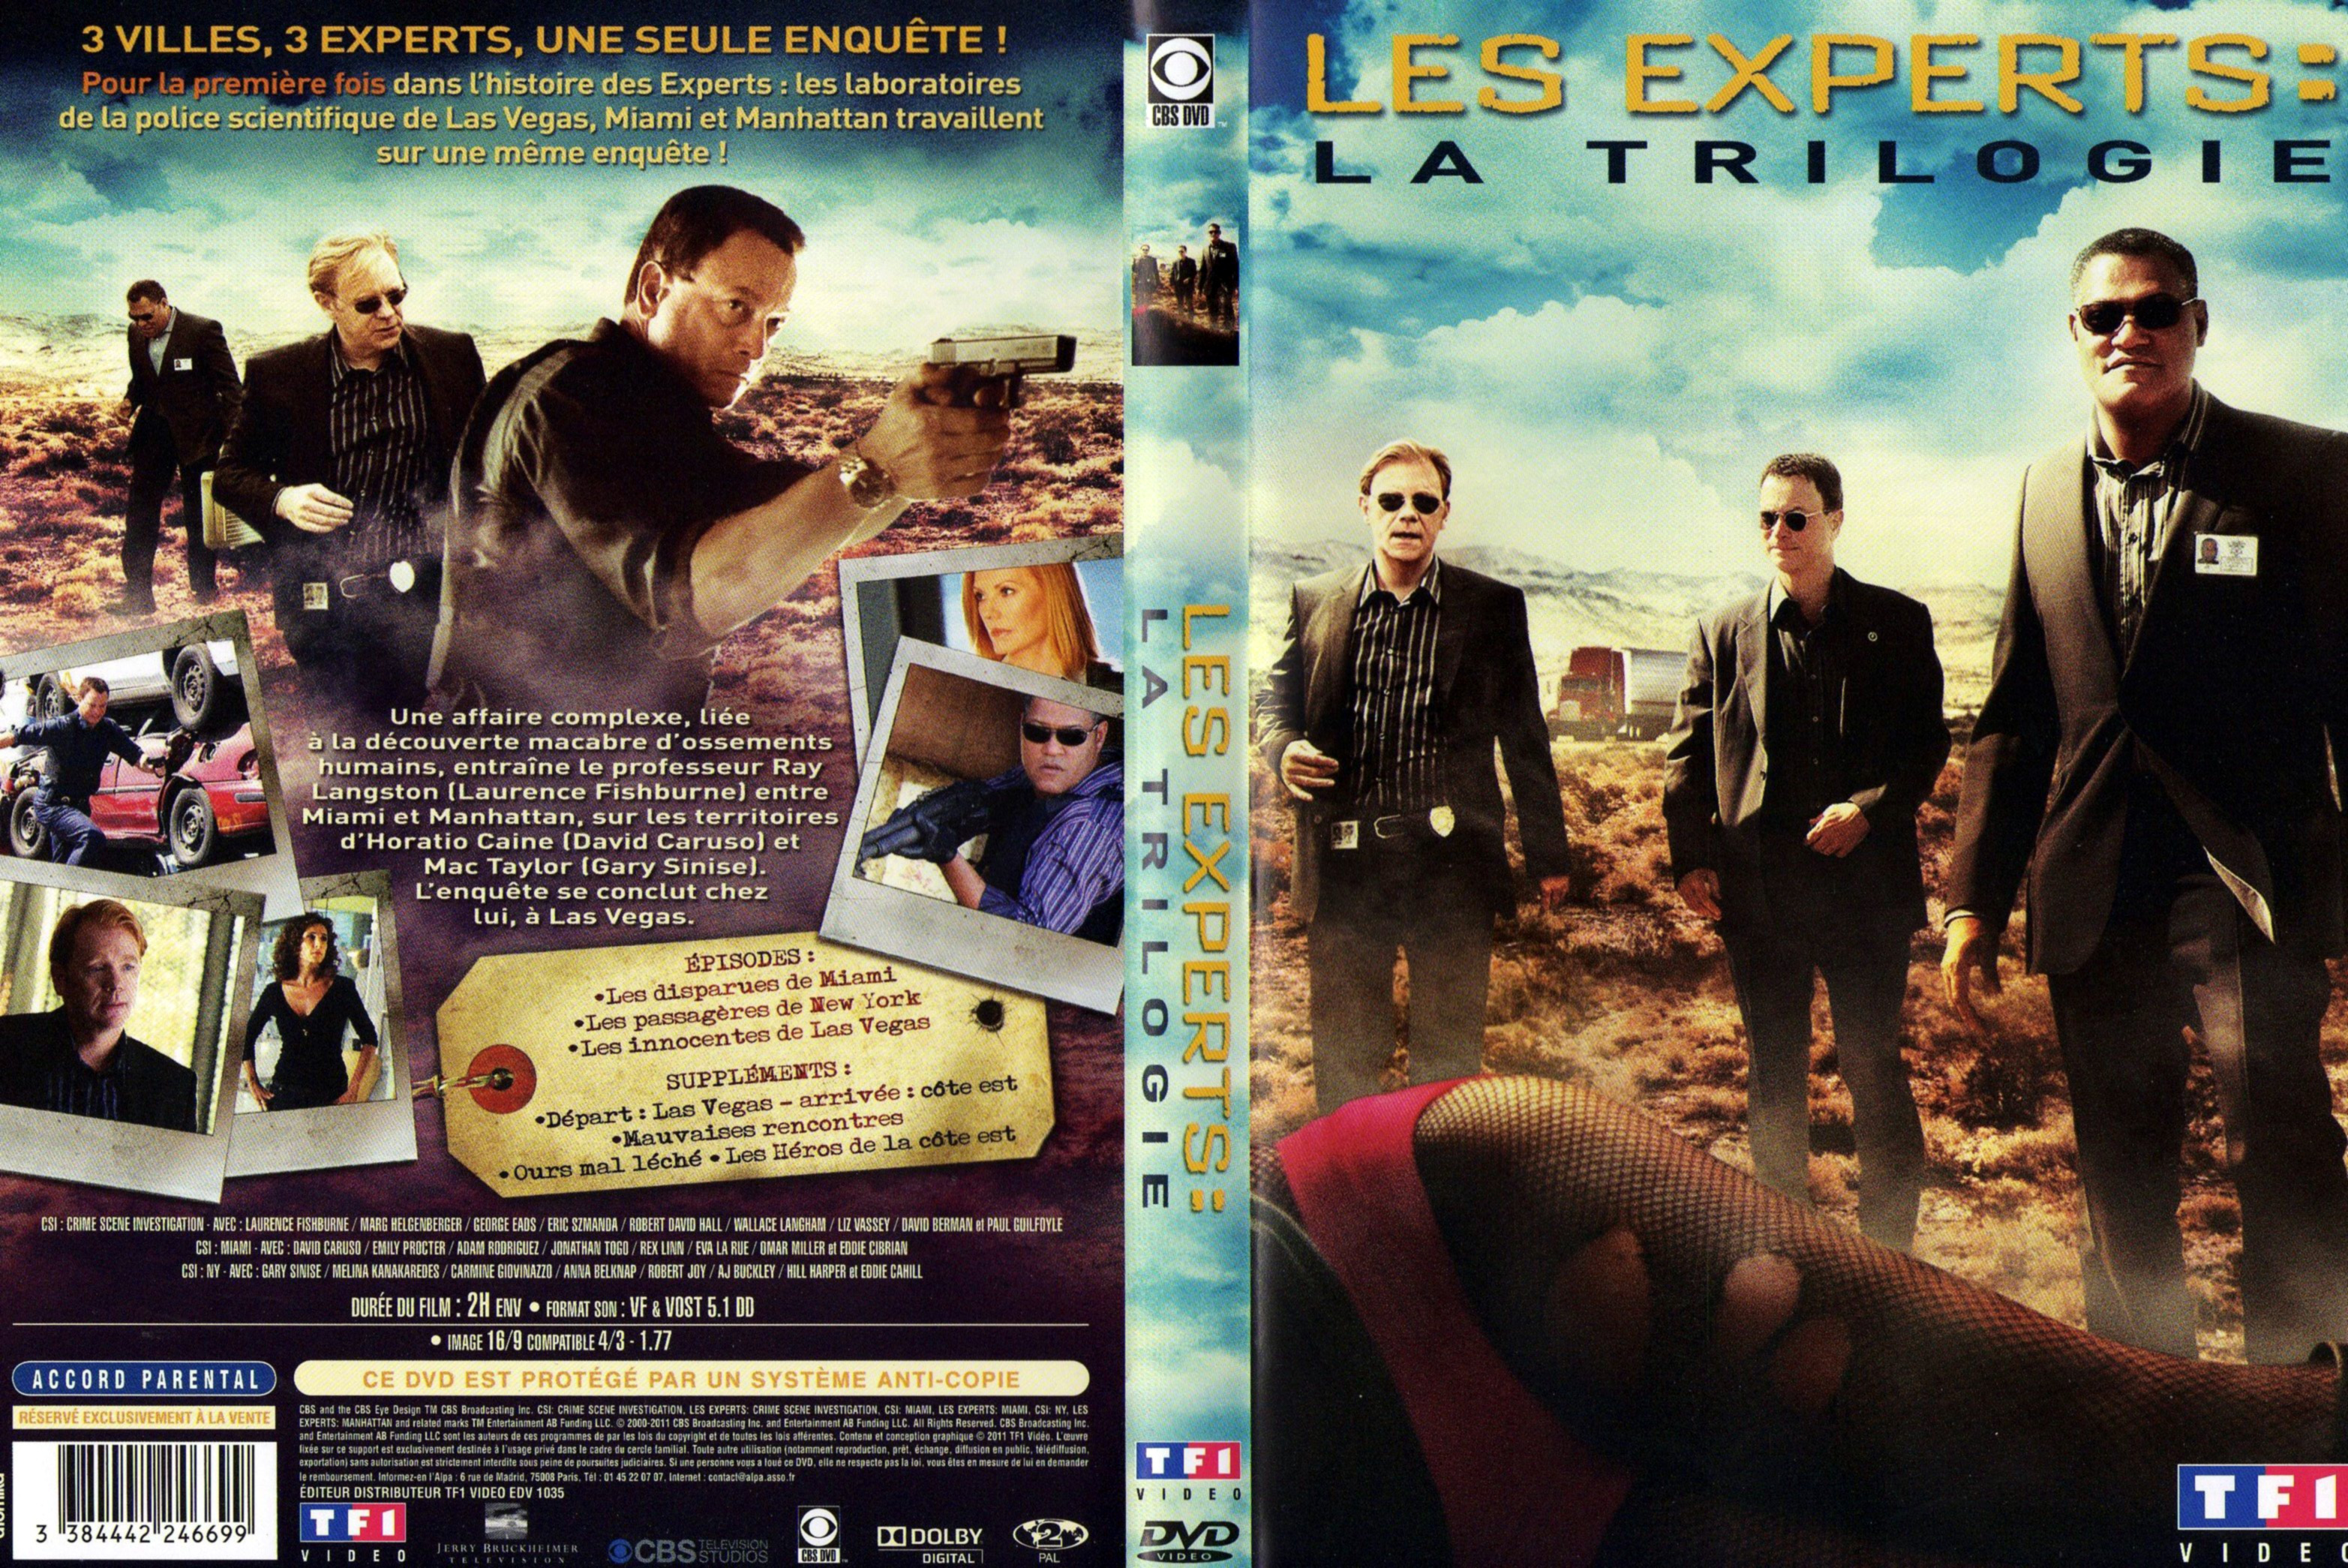 Jaquette DVD Les experts - La trilogie